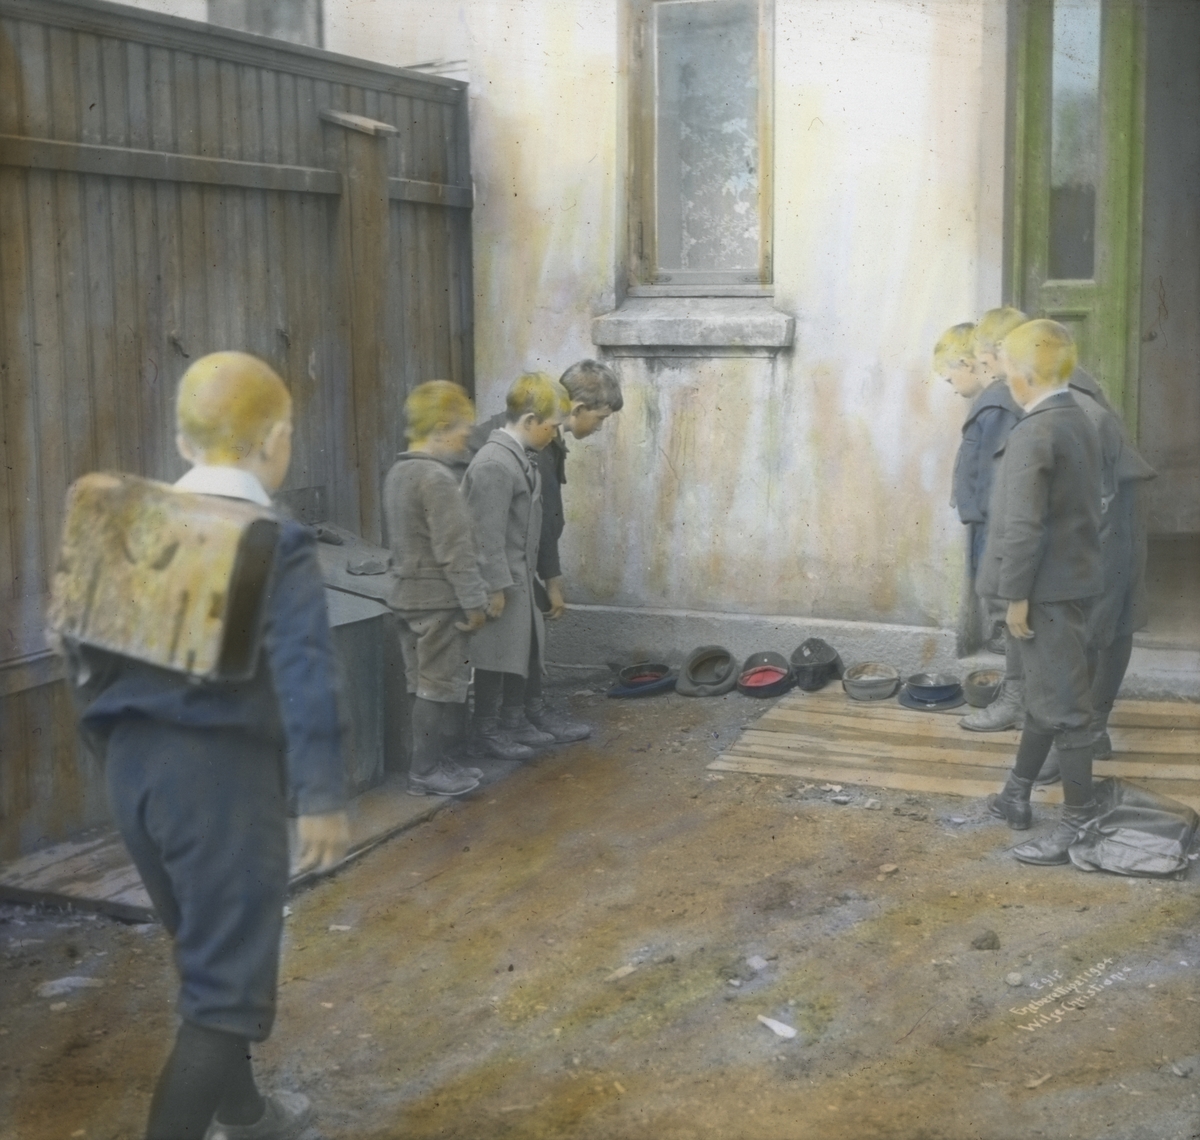 Håndkolorert dias. 7 gutter leker i en bakgård i 1904. Luene deres ligger på rekke ved veggen, 6 av guttene ser på disse, mens en gutt med ransel står klar til å kaste.